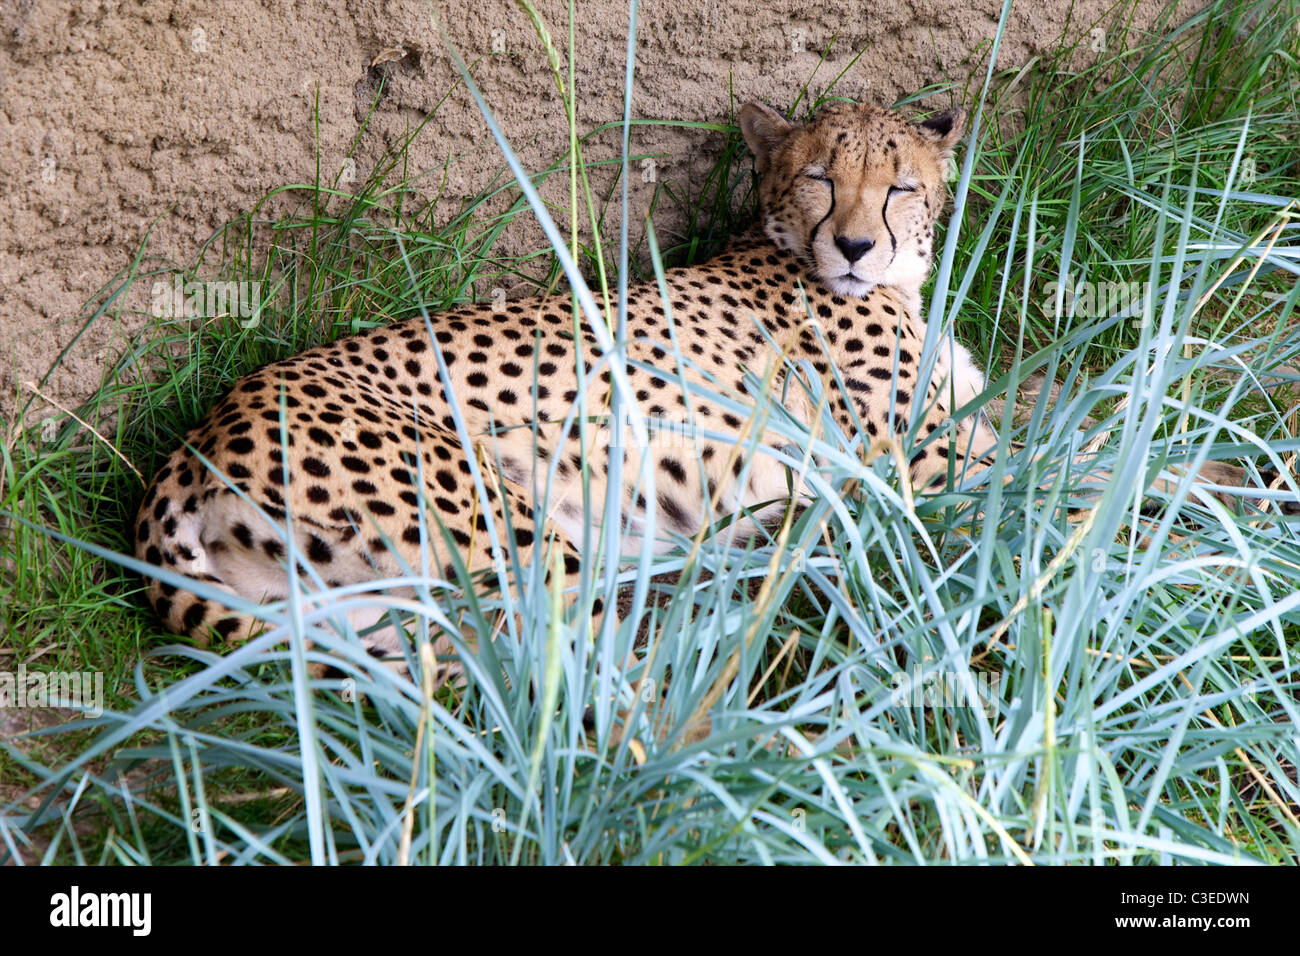 A Cheetah (Acinonyx jubatus) sleeping in a shaded grassy area. Stock Photo